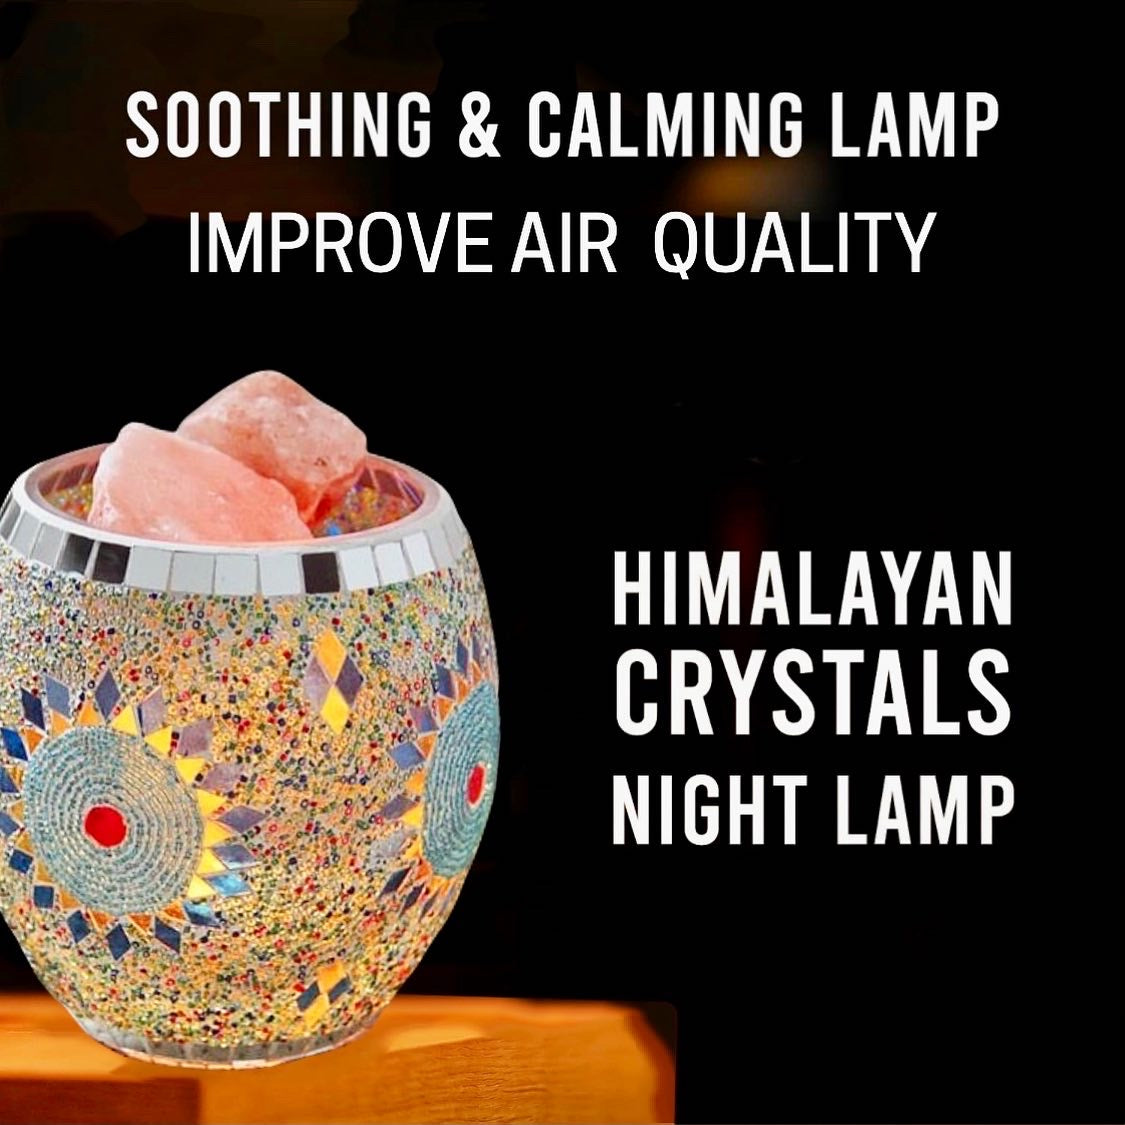 Himalayan Salt Mosaic Glass Table Lamp Natural Night Light Handcrafted Purifying Air, Wellness, Meditation included 3LB Original Himalayan Stones